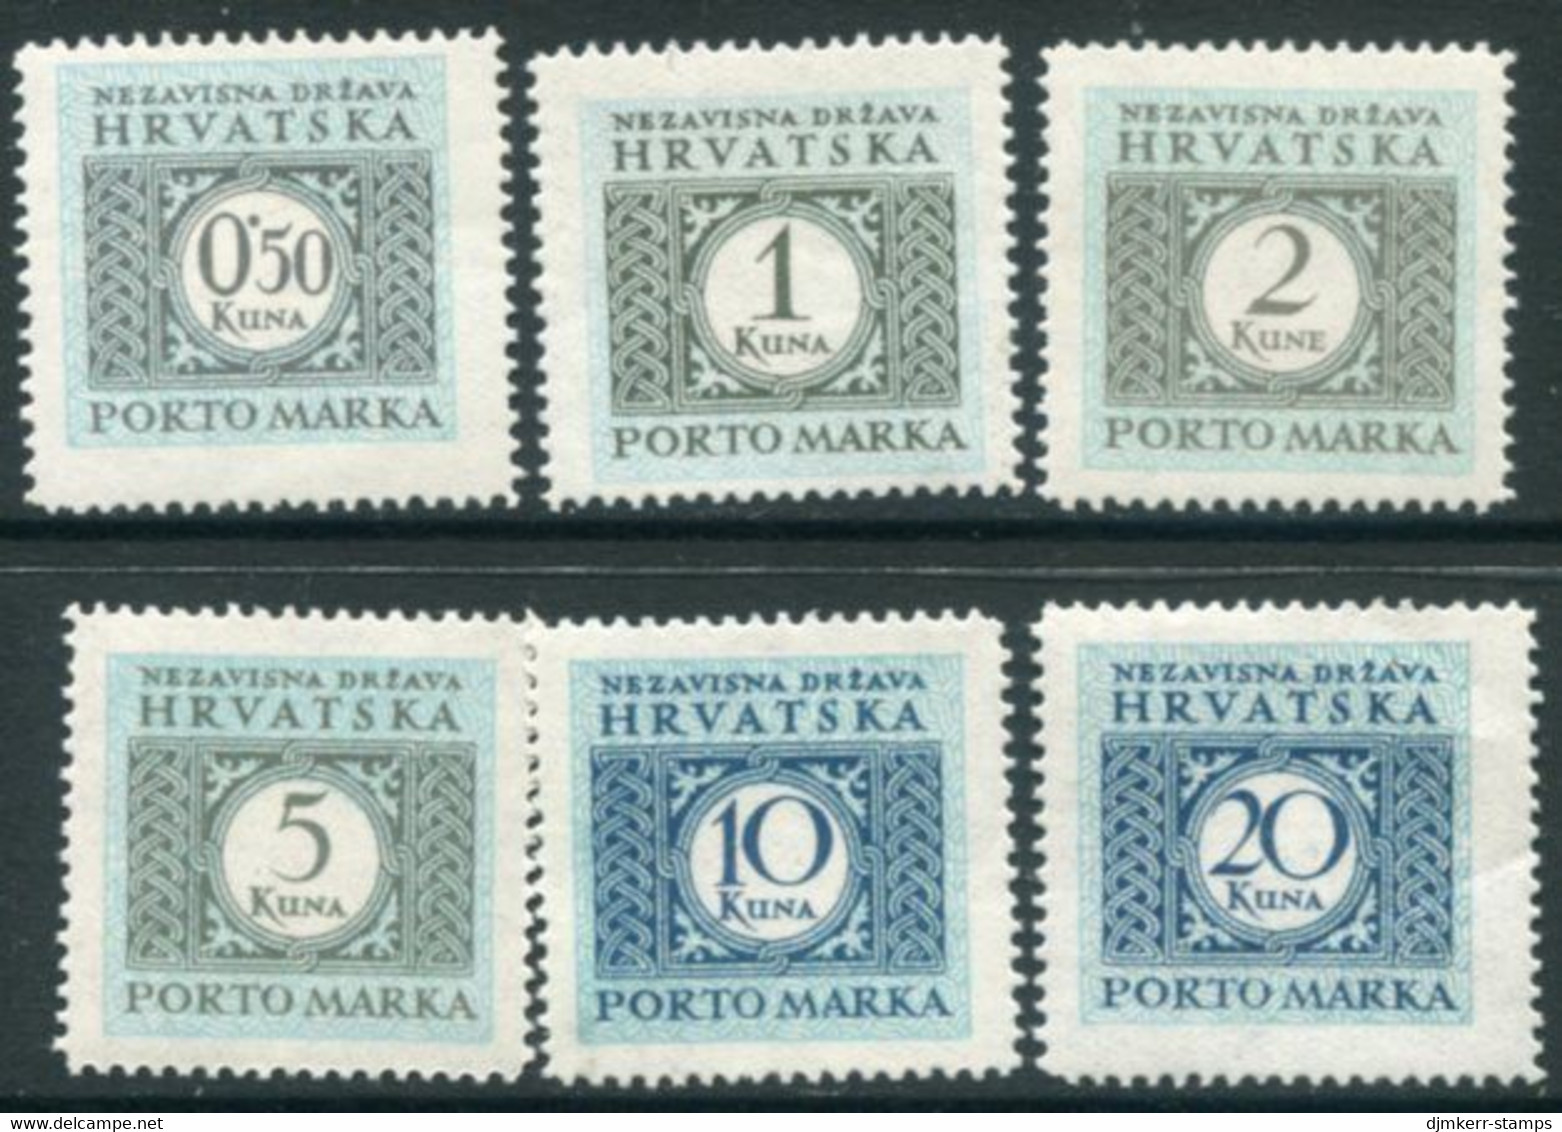 CROATIA 1942 Postage Due Perforated 11½ MNH / **.  Michel Porto 11-16A - Croatia